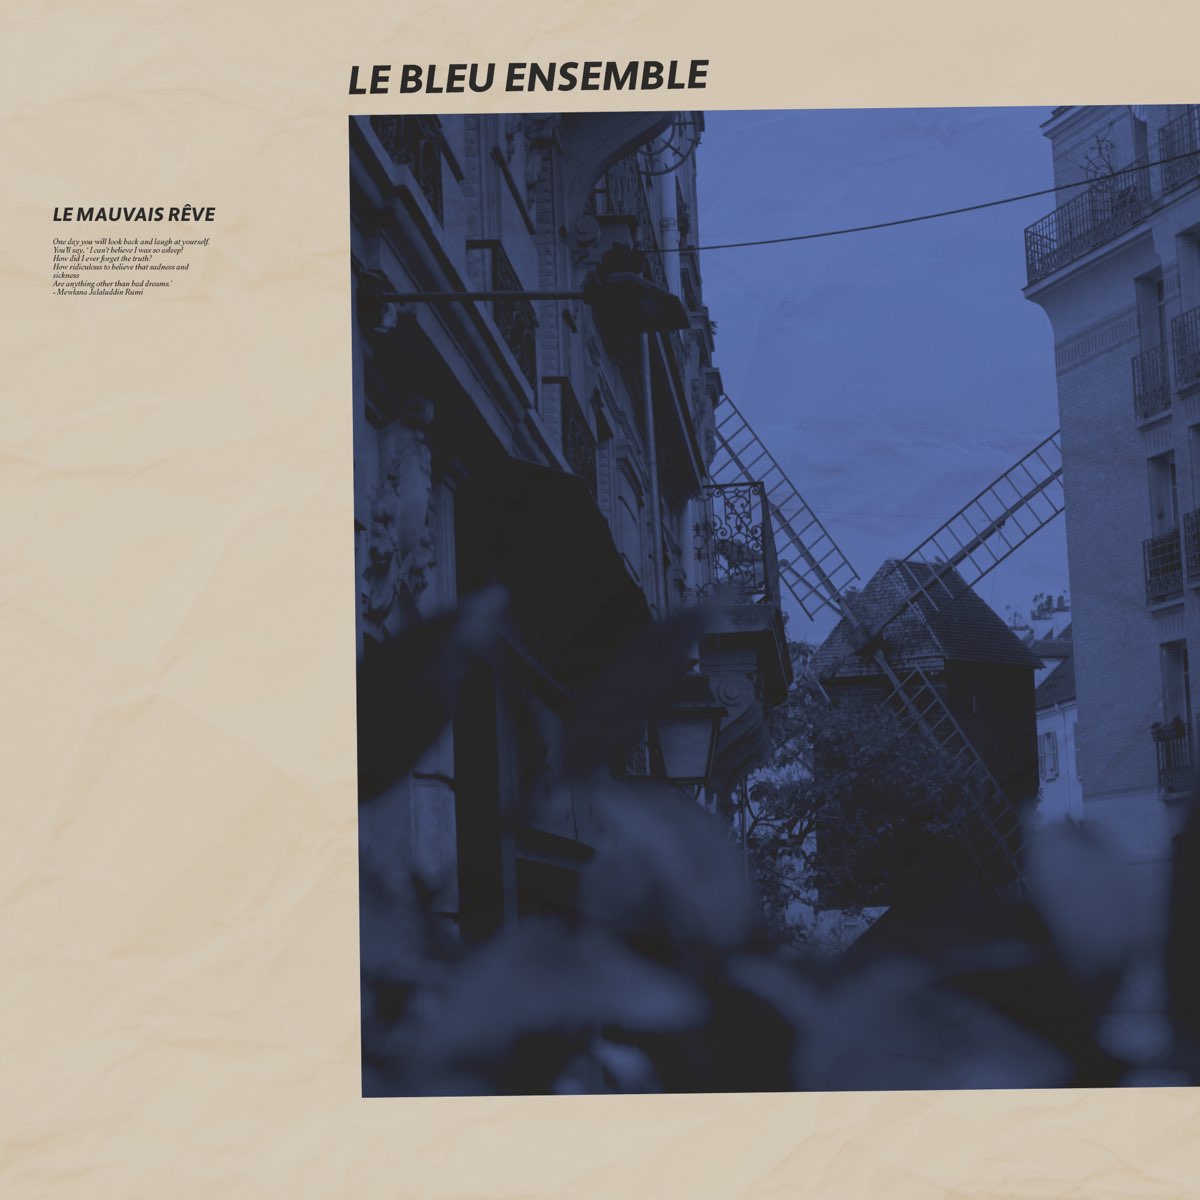 Le Mauvais Rêve - Single - Album by Le Bleu Ensemble - Apple Music